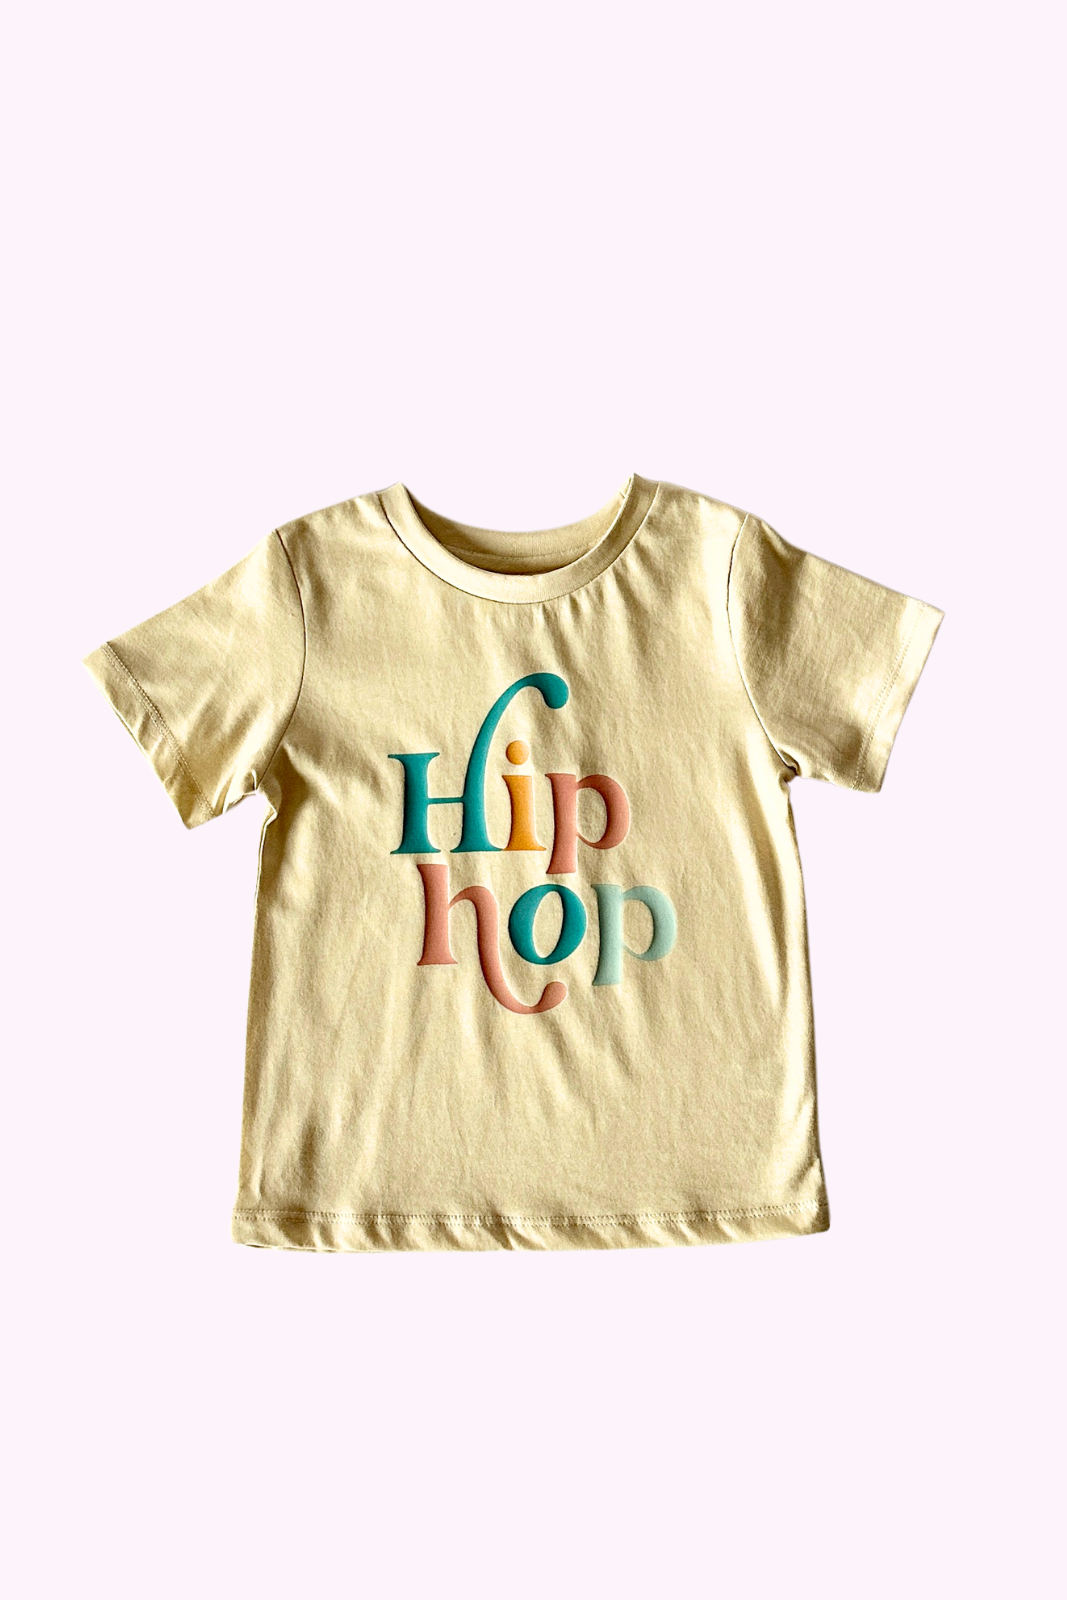 Hip Hop Easter Tee for Big Kids